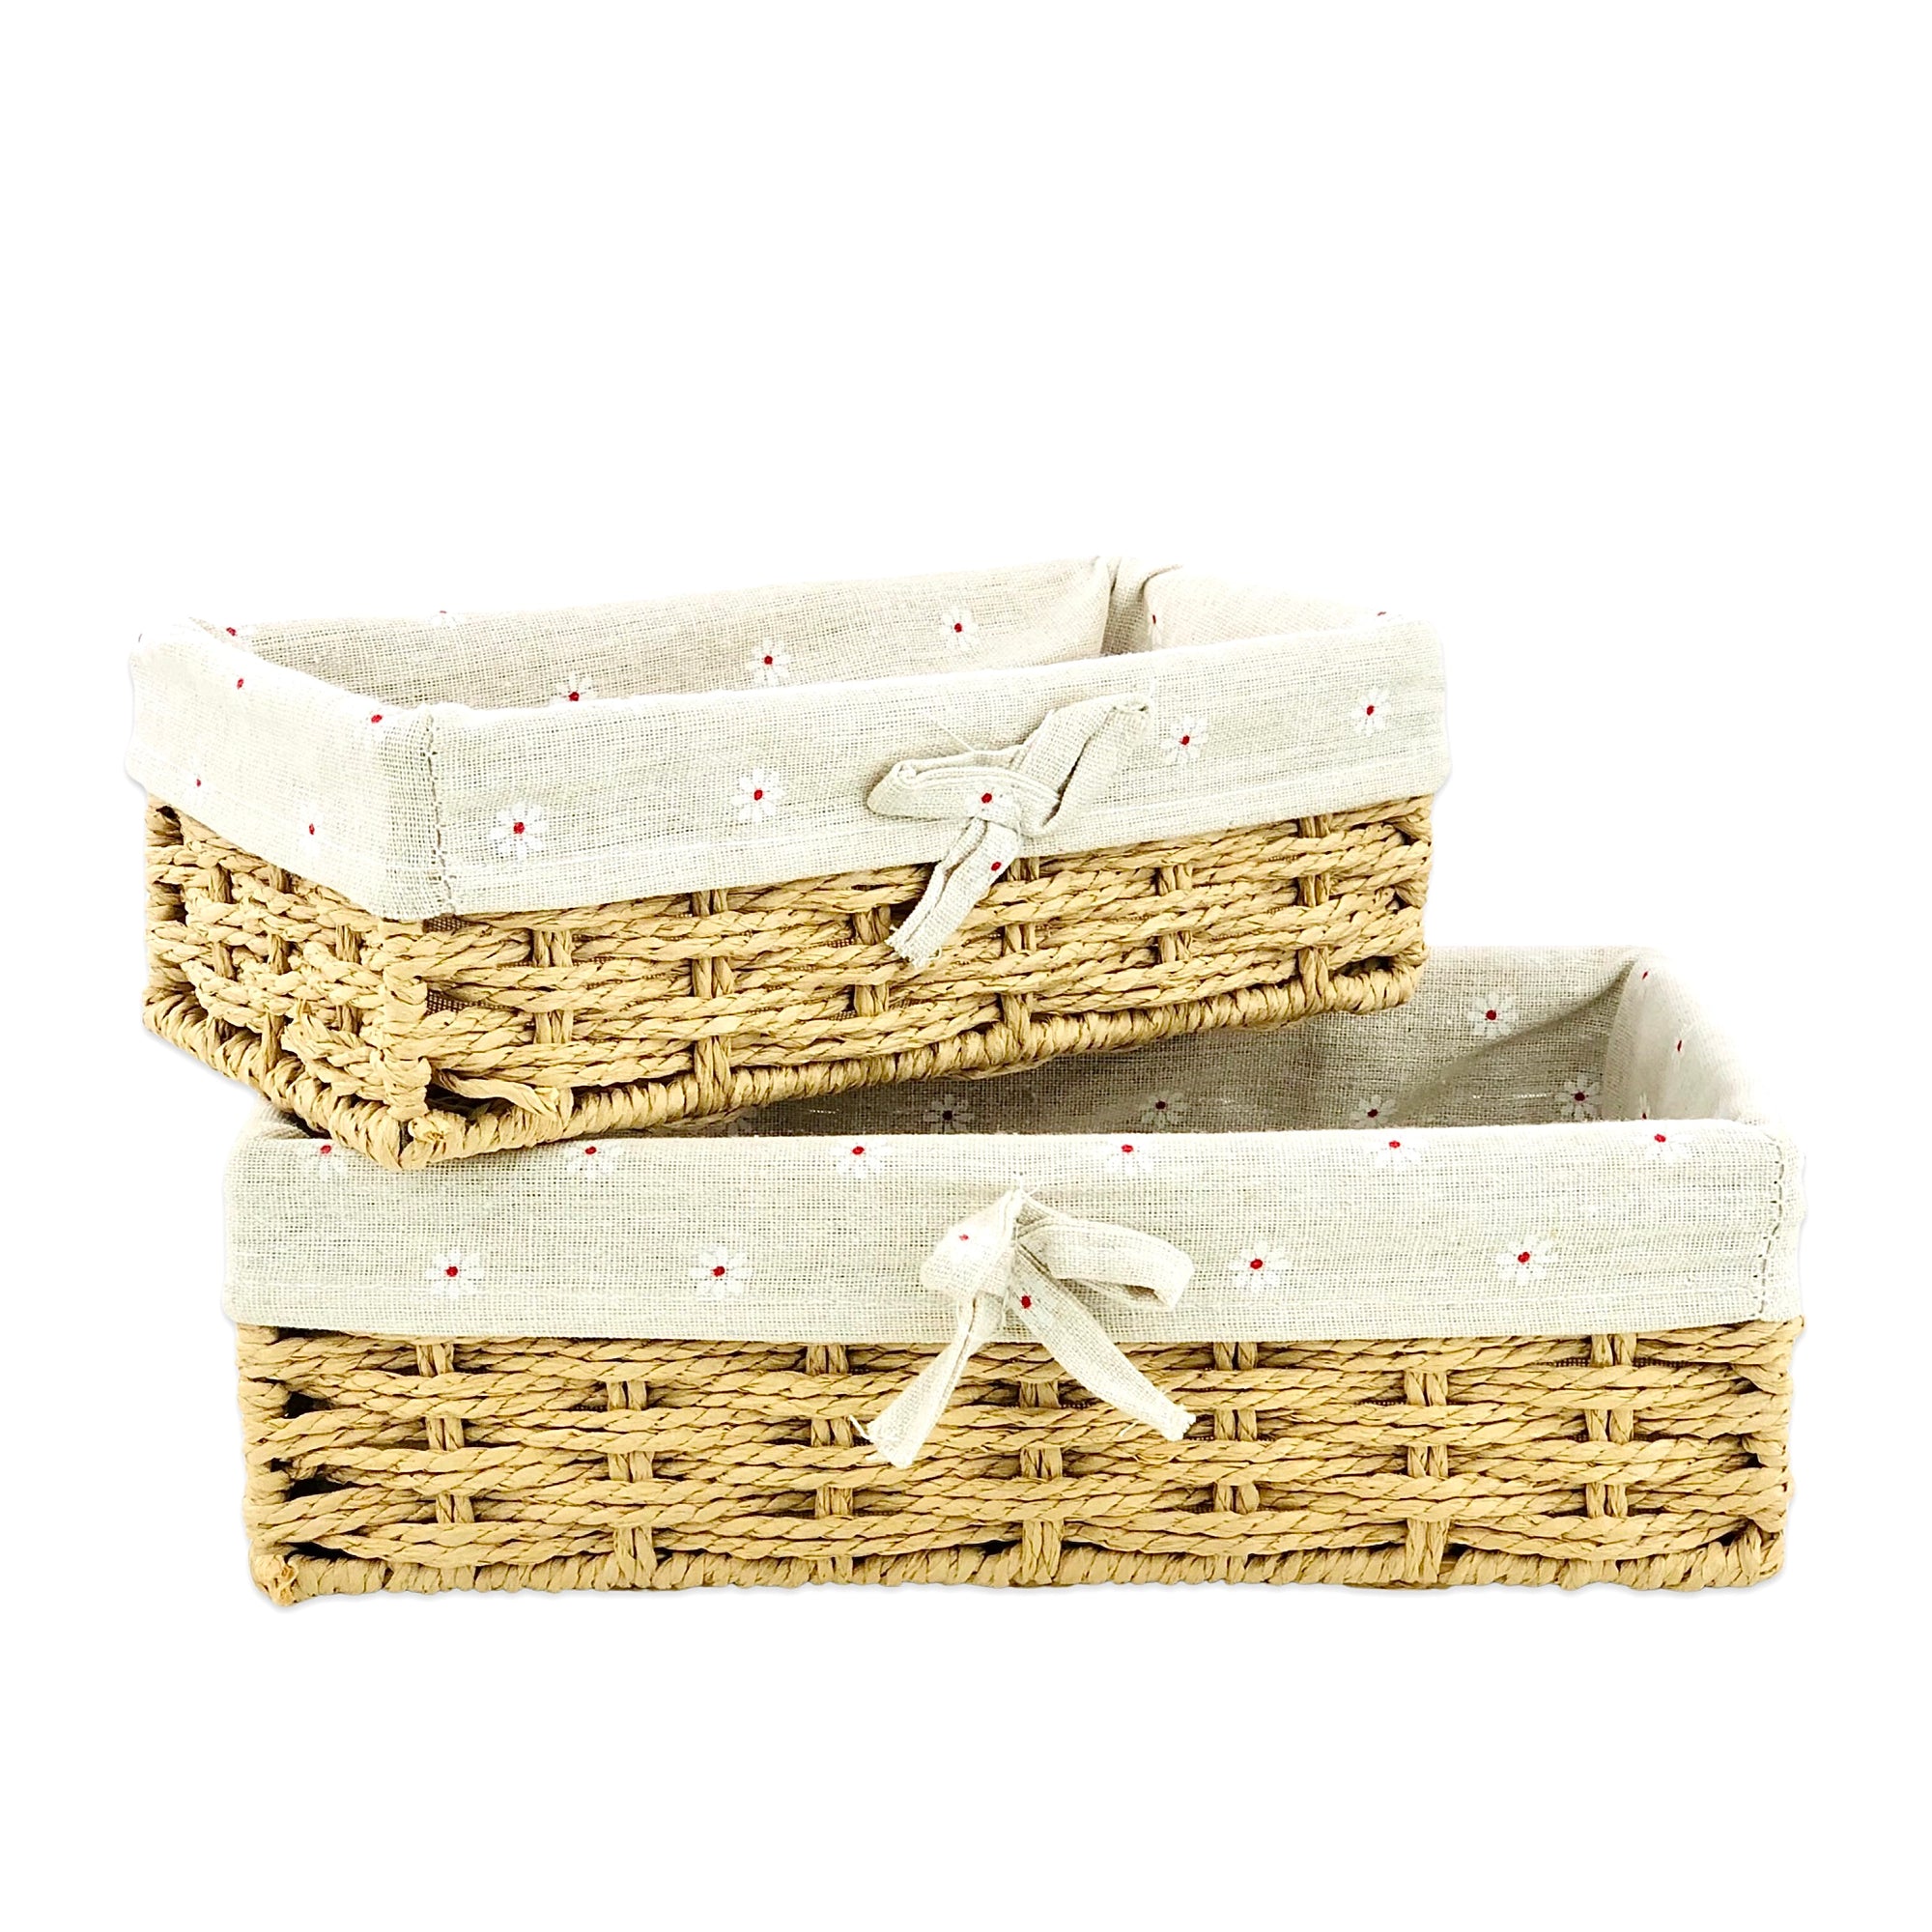 Beige Jute & Linen Towel Basket  (Set of 2)